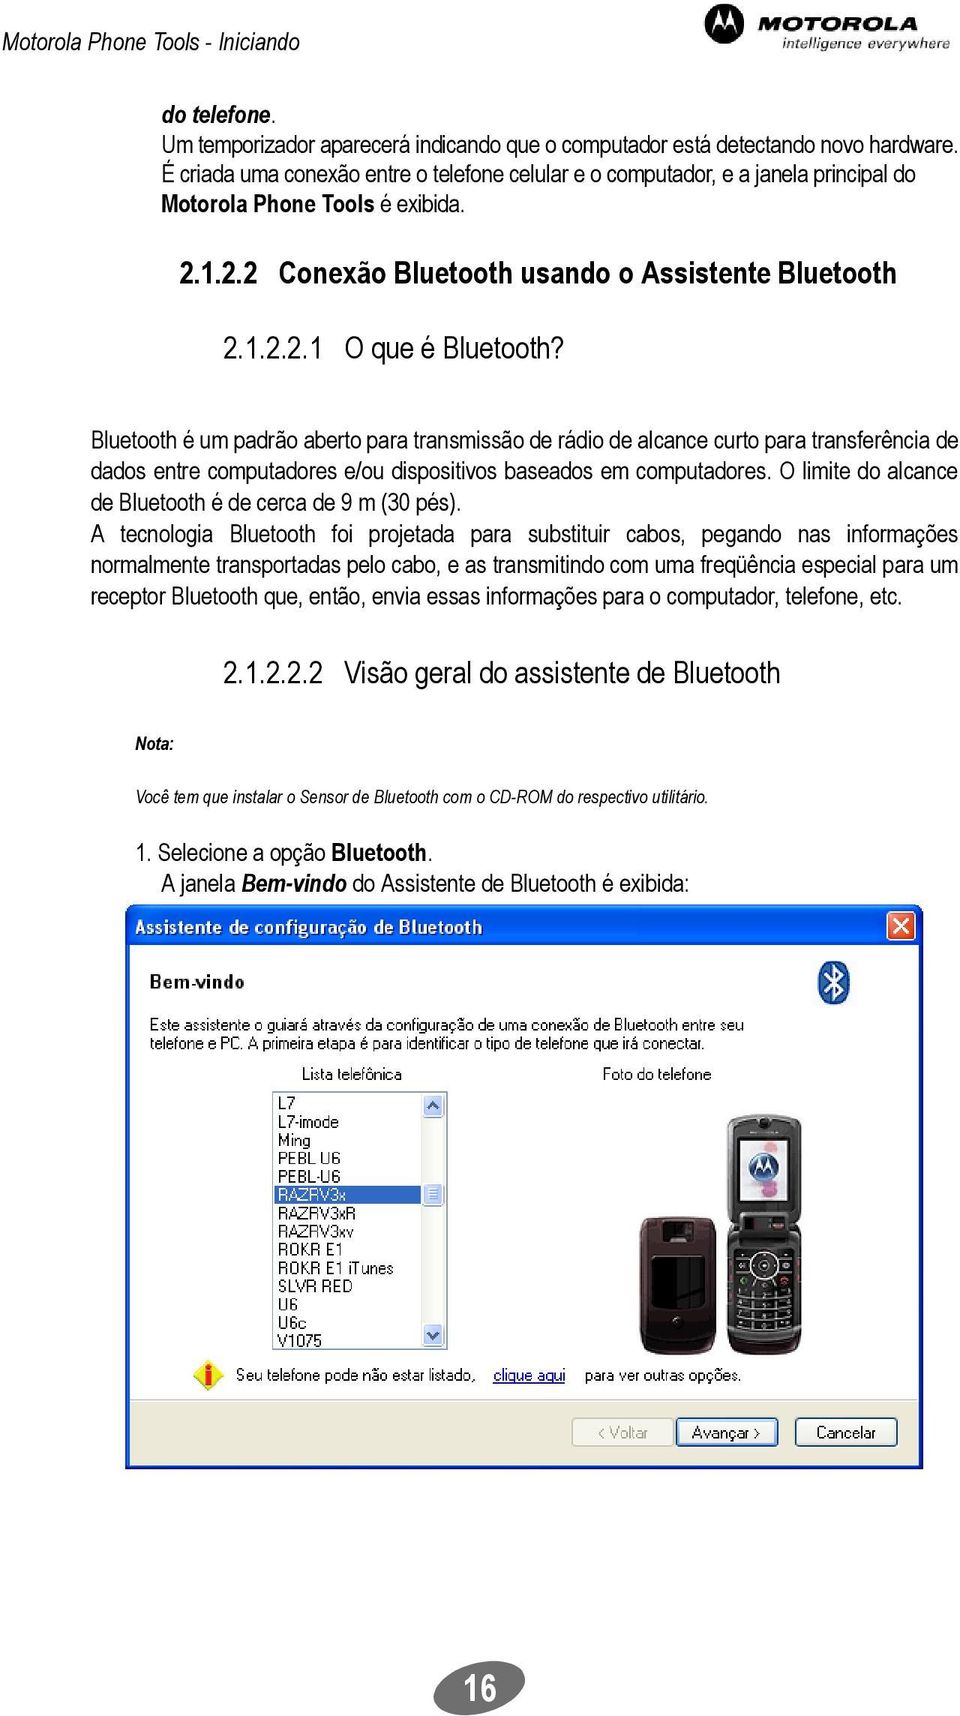 Bluetooth é um padrão aberto para transmissão de rádio de alcance curto para transferência de dados entre computadores e/ou dispositivos baseados em computadores.